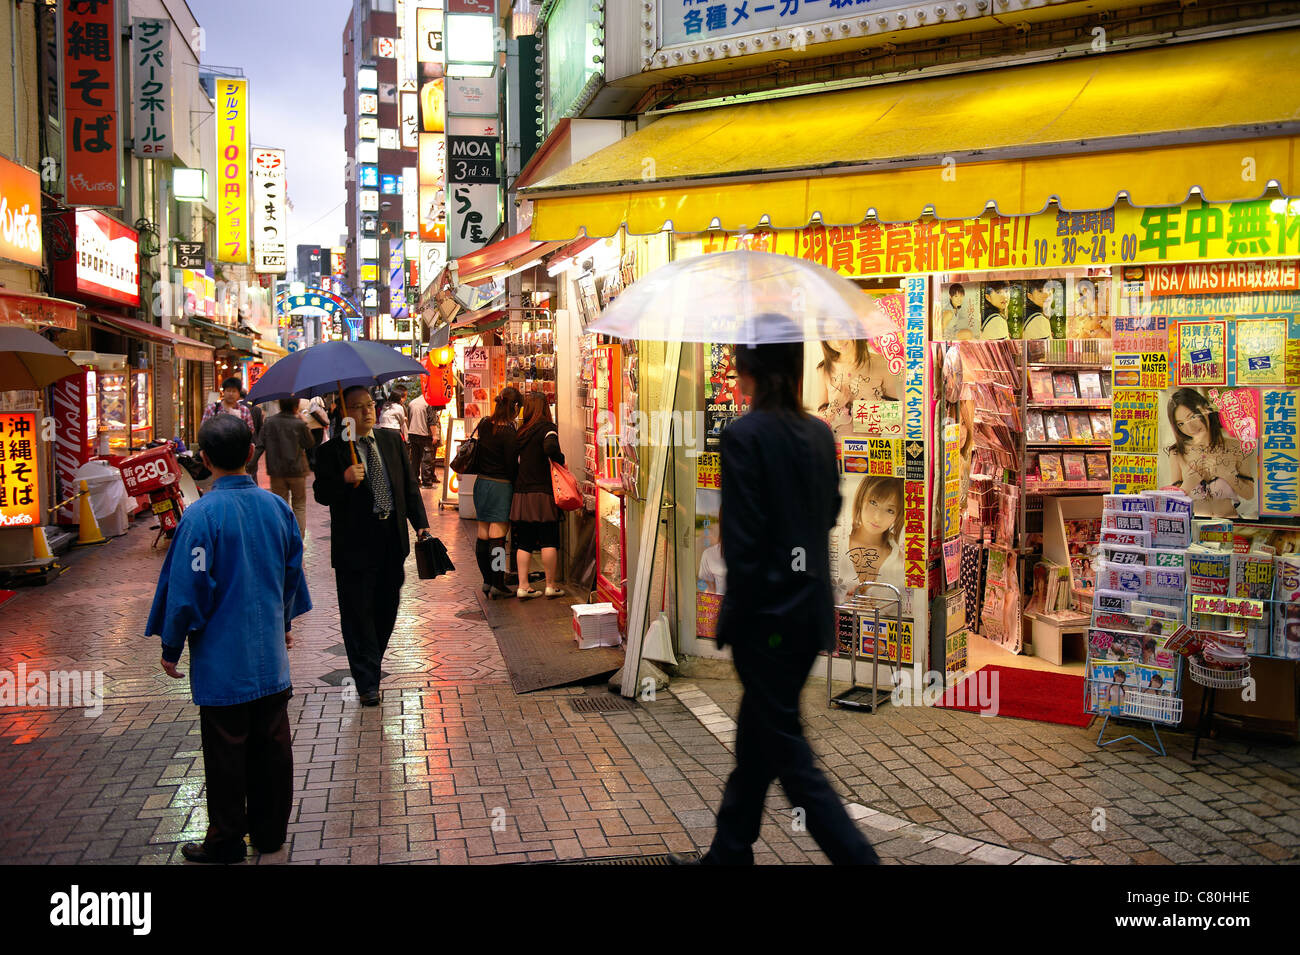 Japan, Tokyo, view of street in Shinjuku Stock Photo